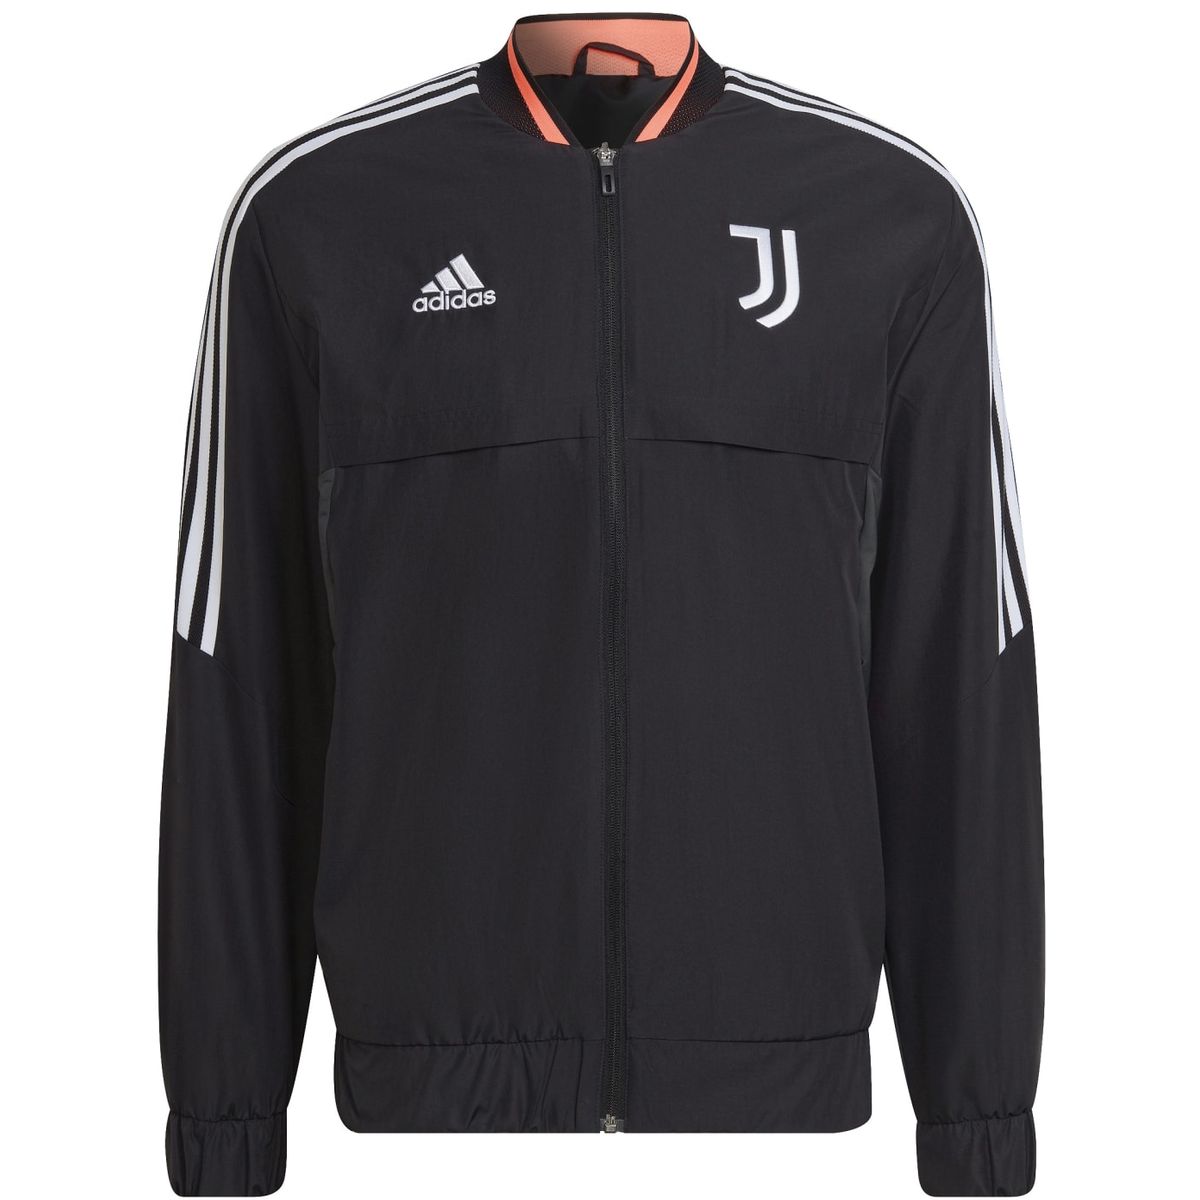 Adidas Juventus Turin Anthem Jacke Herren